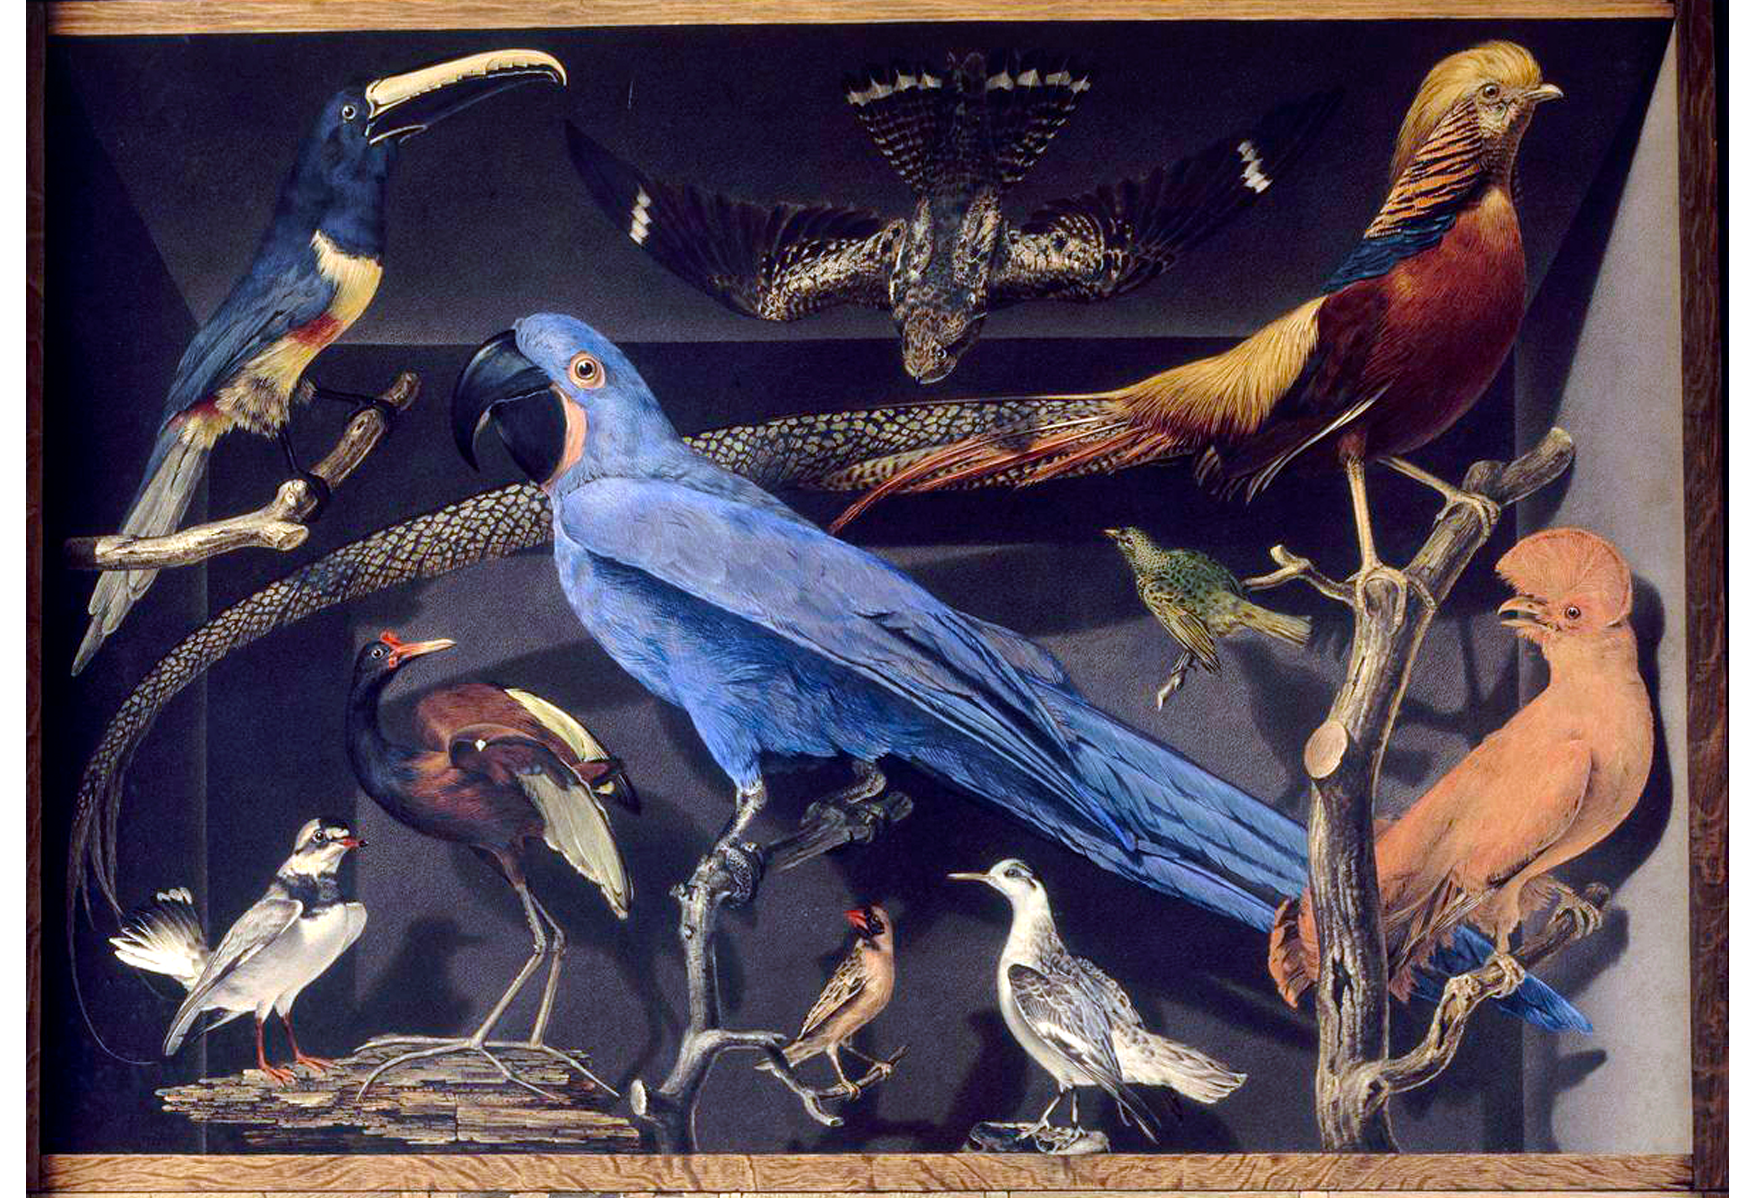 Billede: Samling af fremmede fugle, Leroy de Barde  (1777-1828), Louvre Museum
